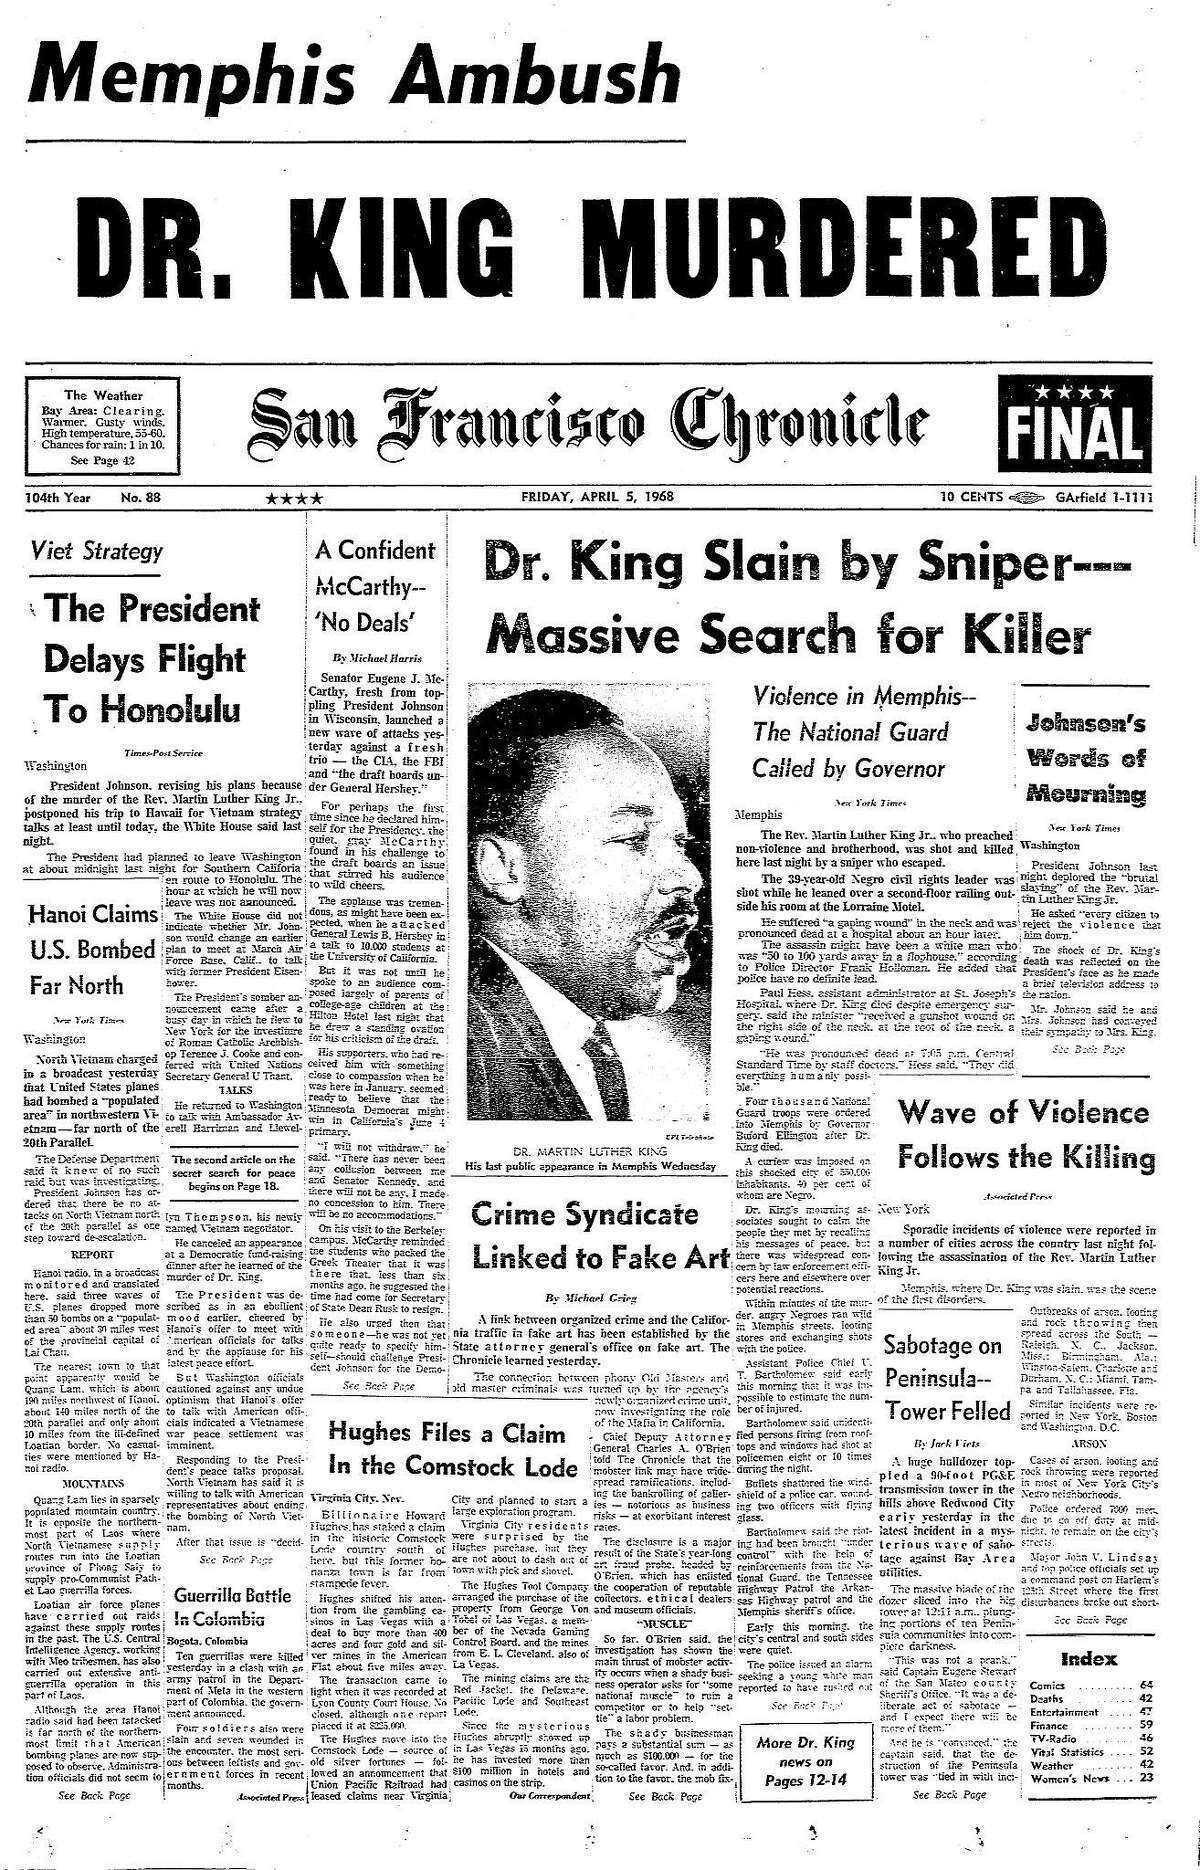 《旧金山纪事报》1968年4月5日，马丁·路德·金牧师遇刺后的头版